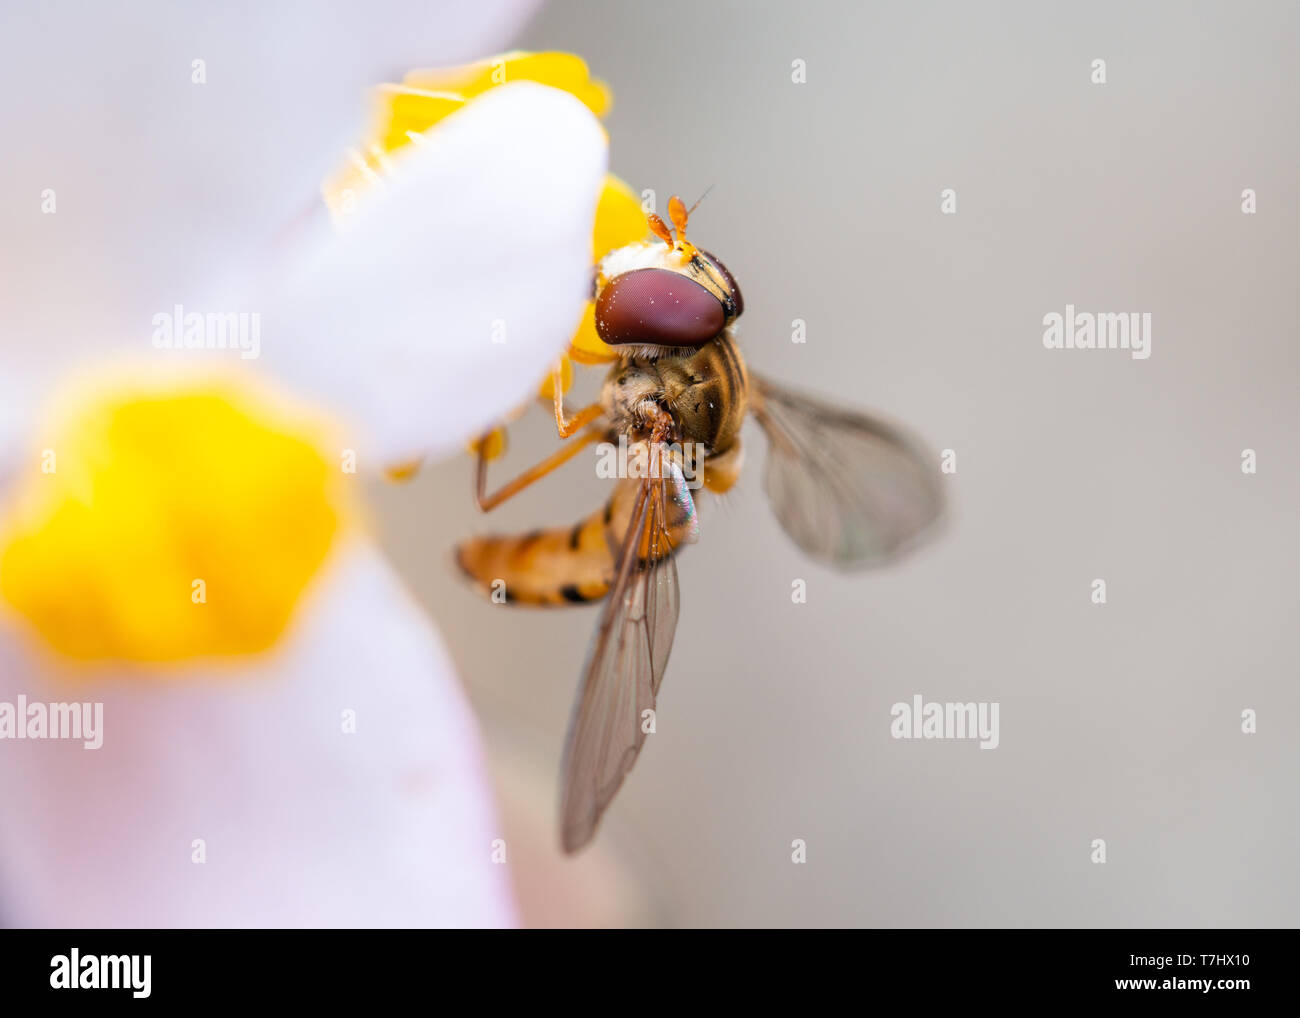 Plan macro sur une marmelade hoverfly Episyrphus balteatus ou sur une fleur le pollen de l'alimentation Banque D'Images